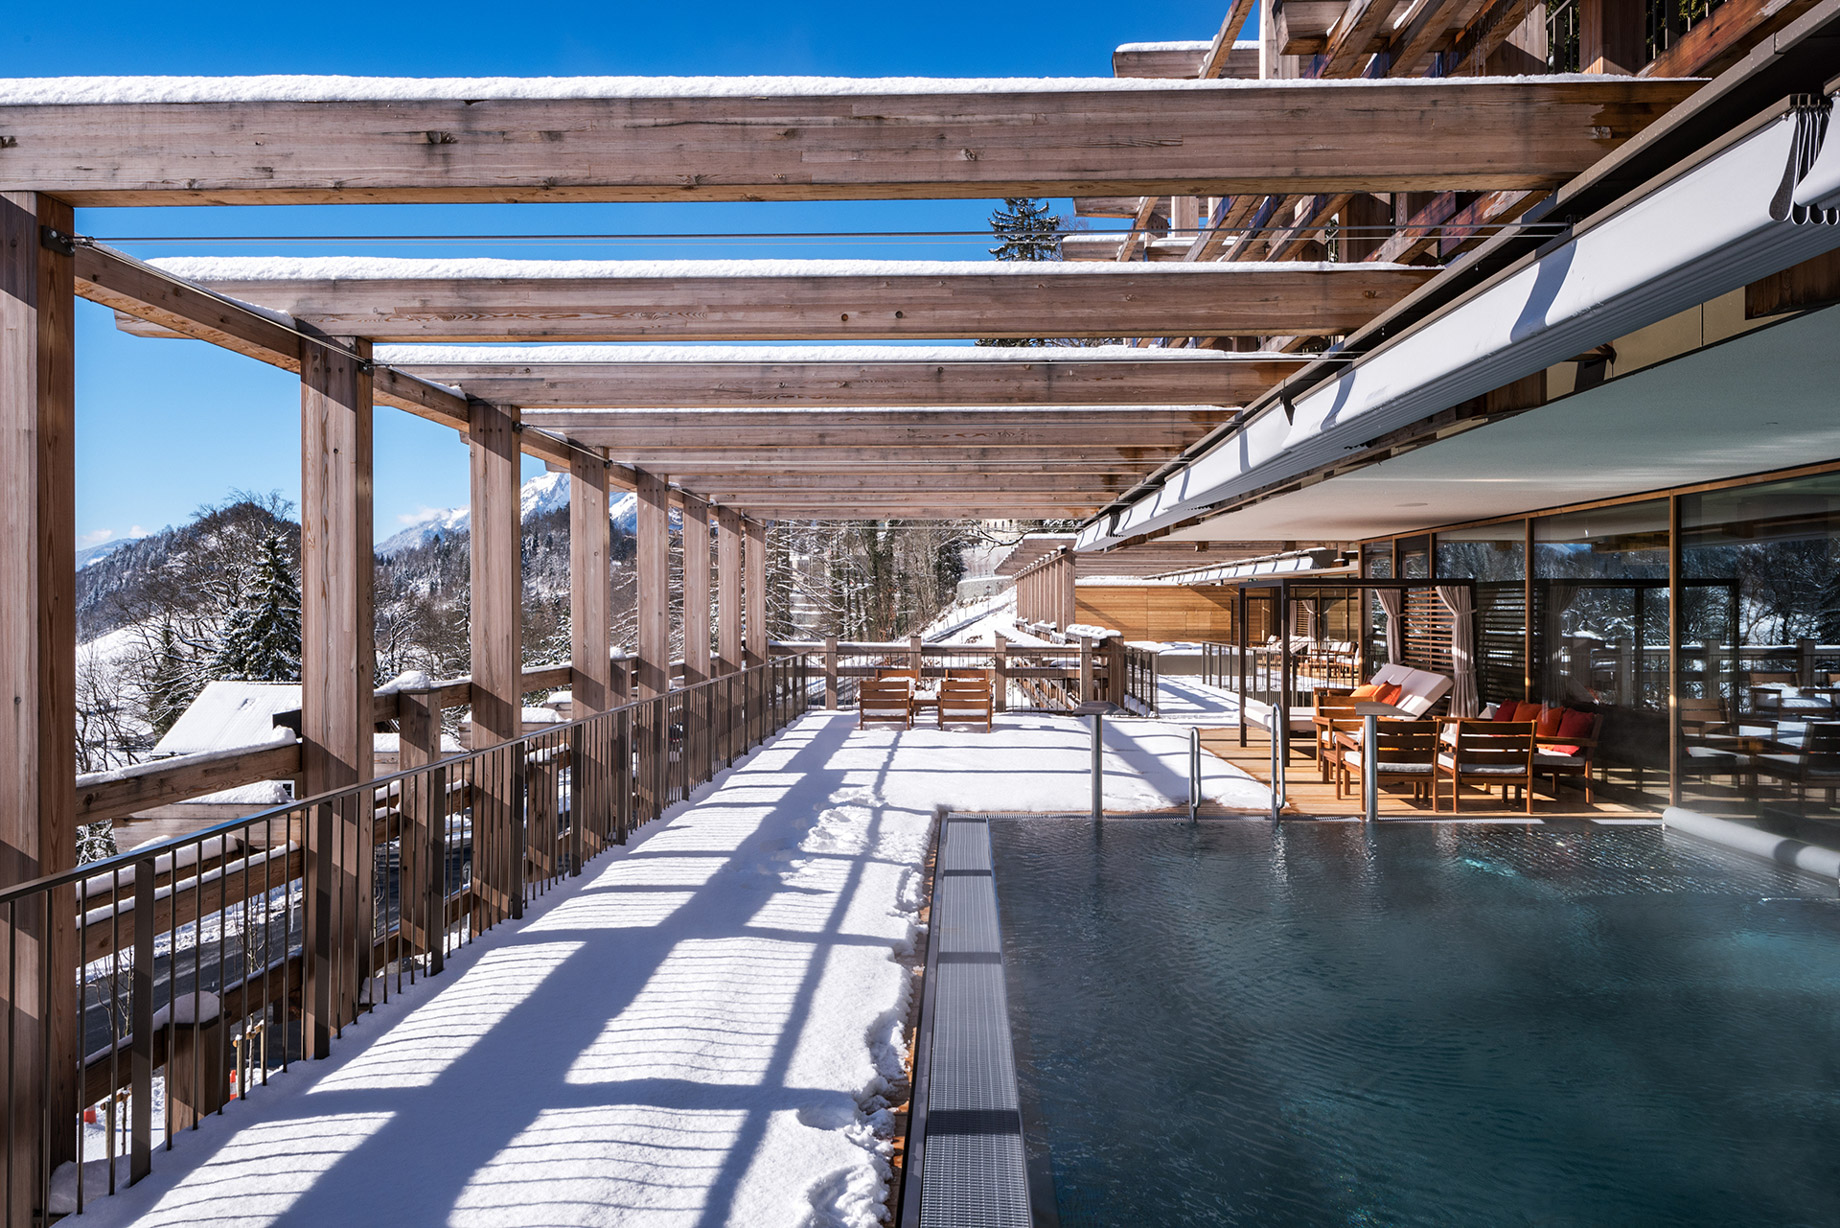 Waldhotel – Burgenstock Hotels & Resort – Obburgen, Switzerland – Outdoor Pool Deck Winter View